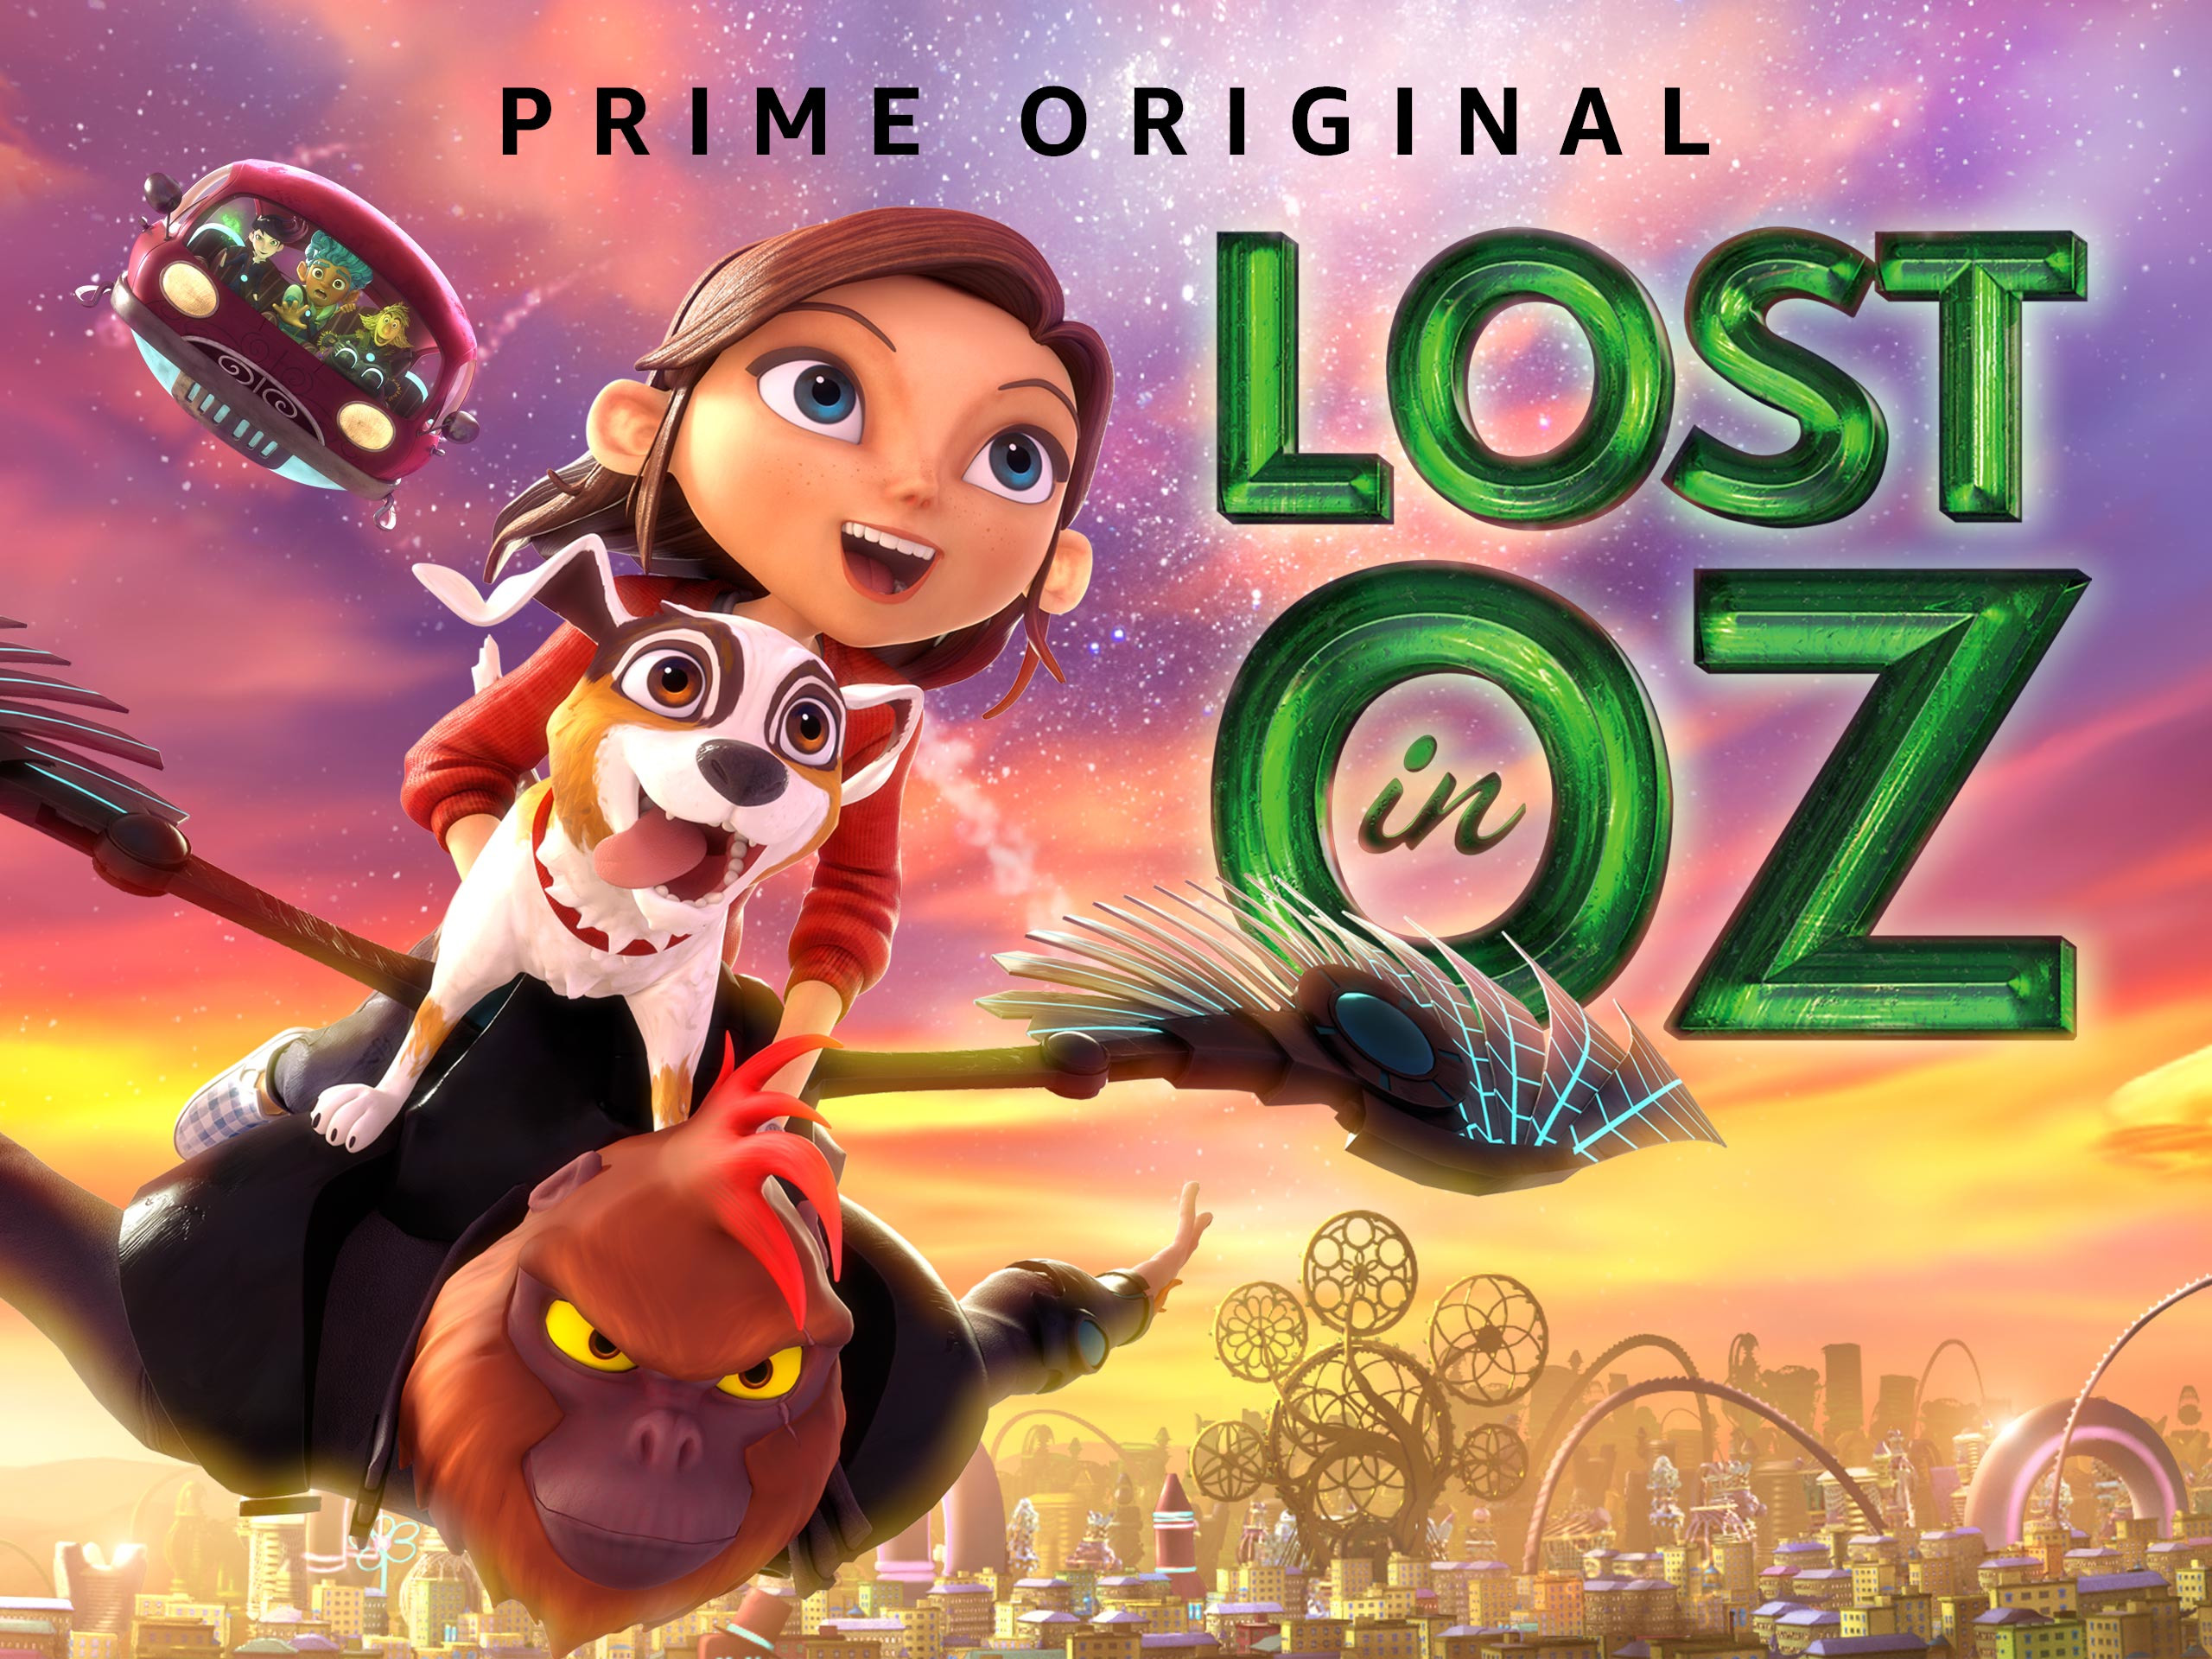 Prime Video: Lost In Oz